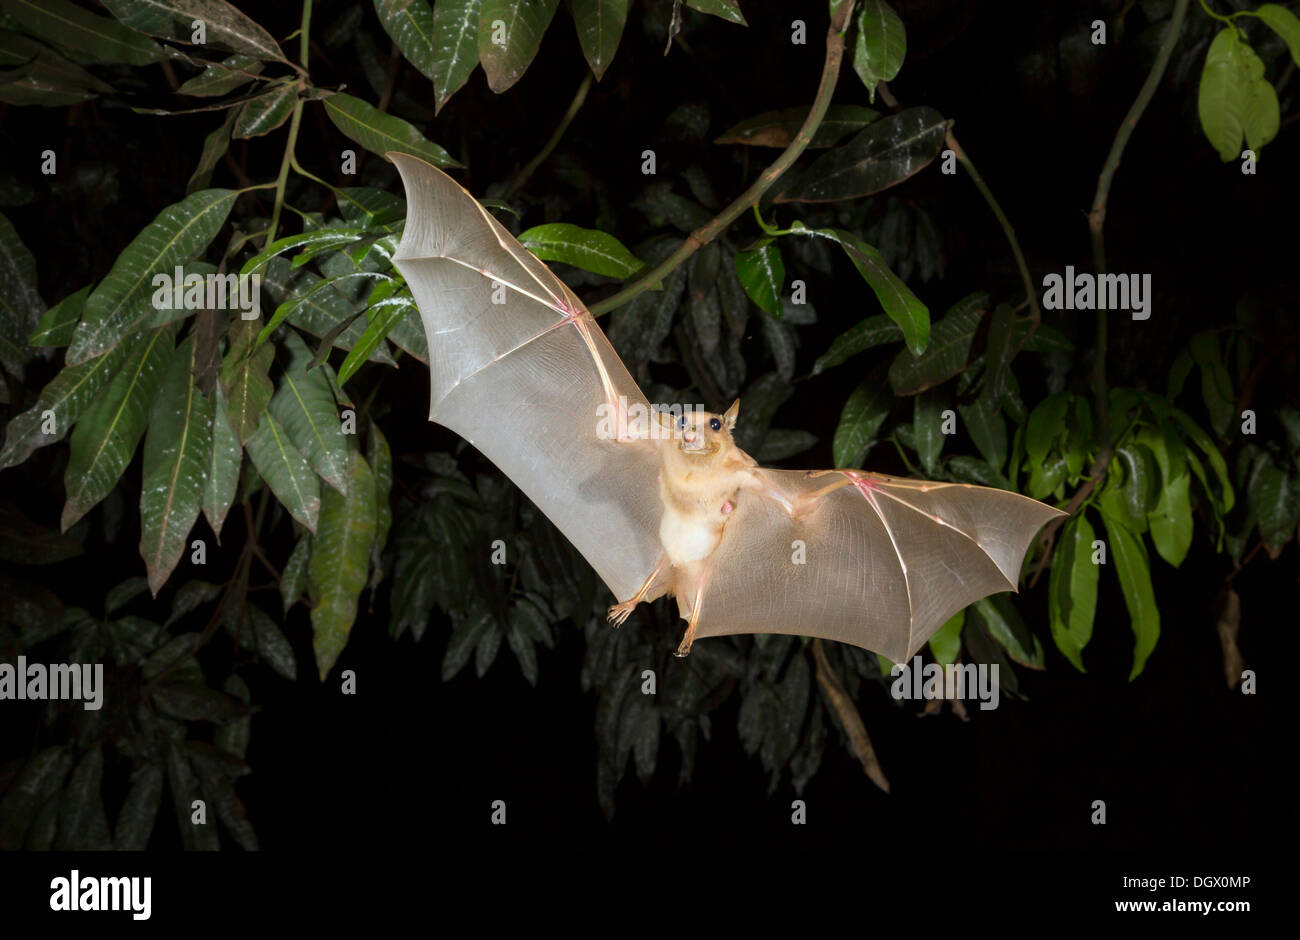 Gambian epauletted fruit bat (Epomophorus gambianus) flying at night, Ghana. Stock Photo